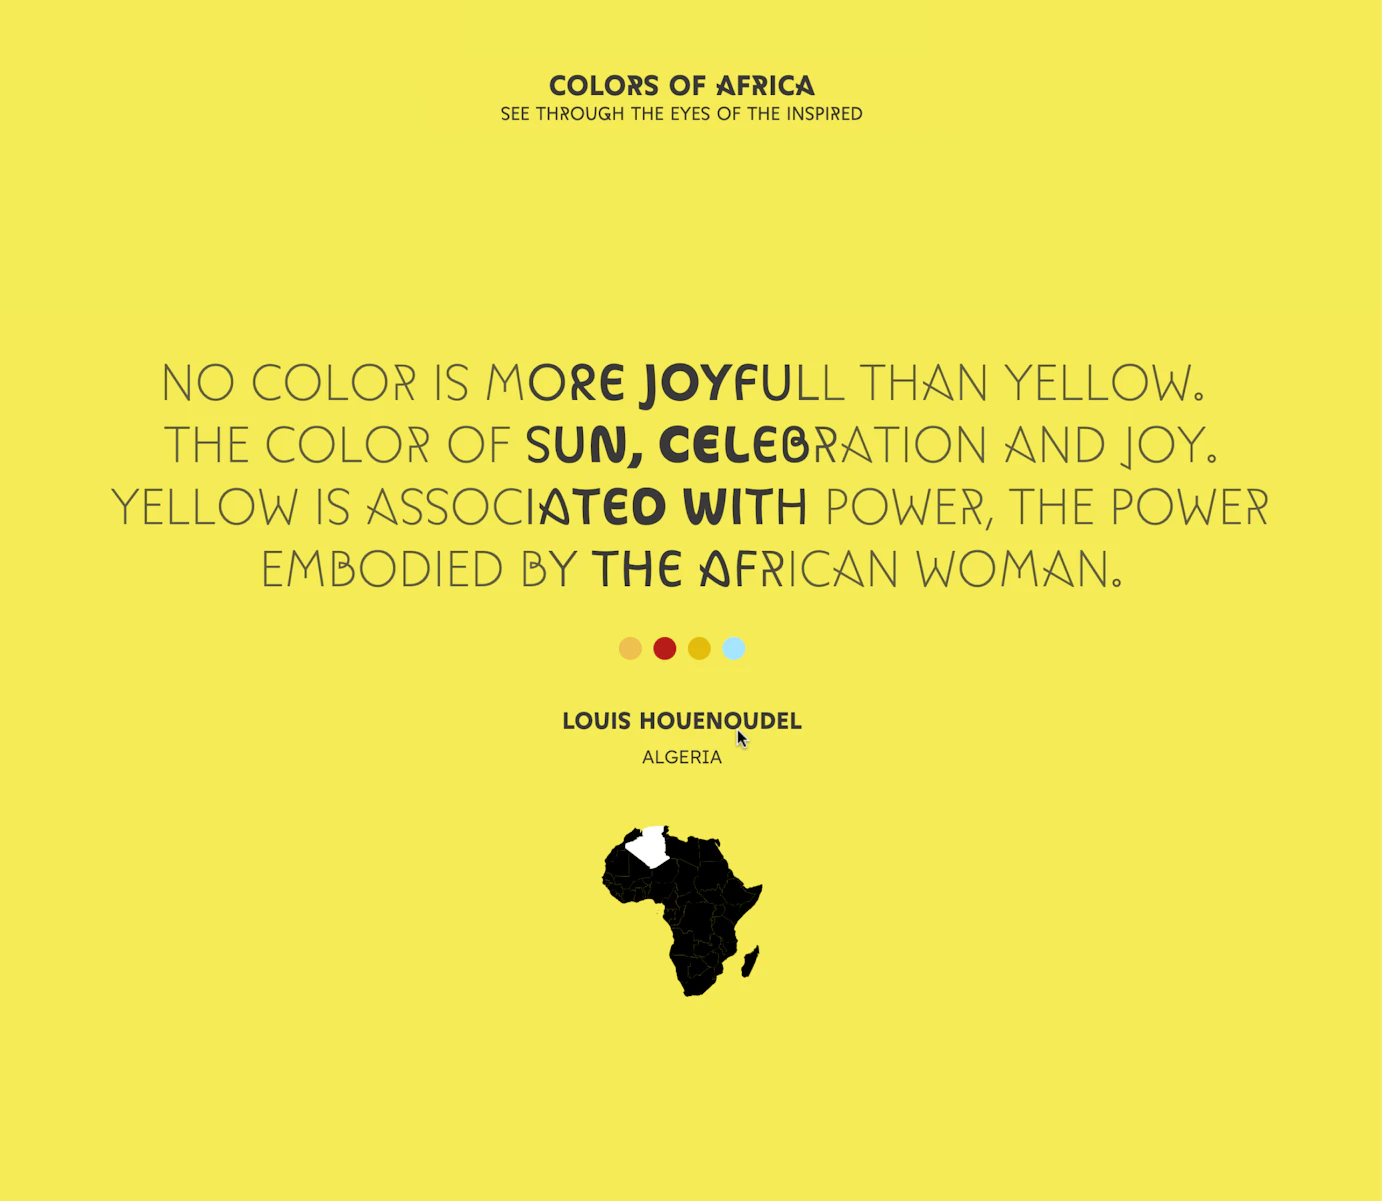 Image numéro africa_0 du projet colors of  crée par Timothé Joubert